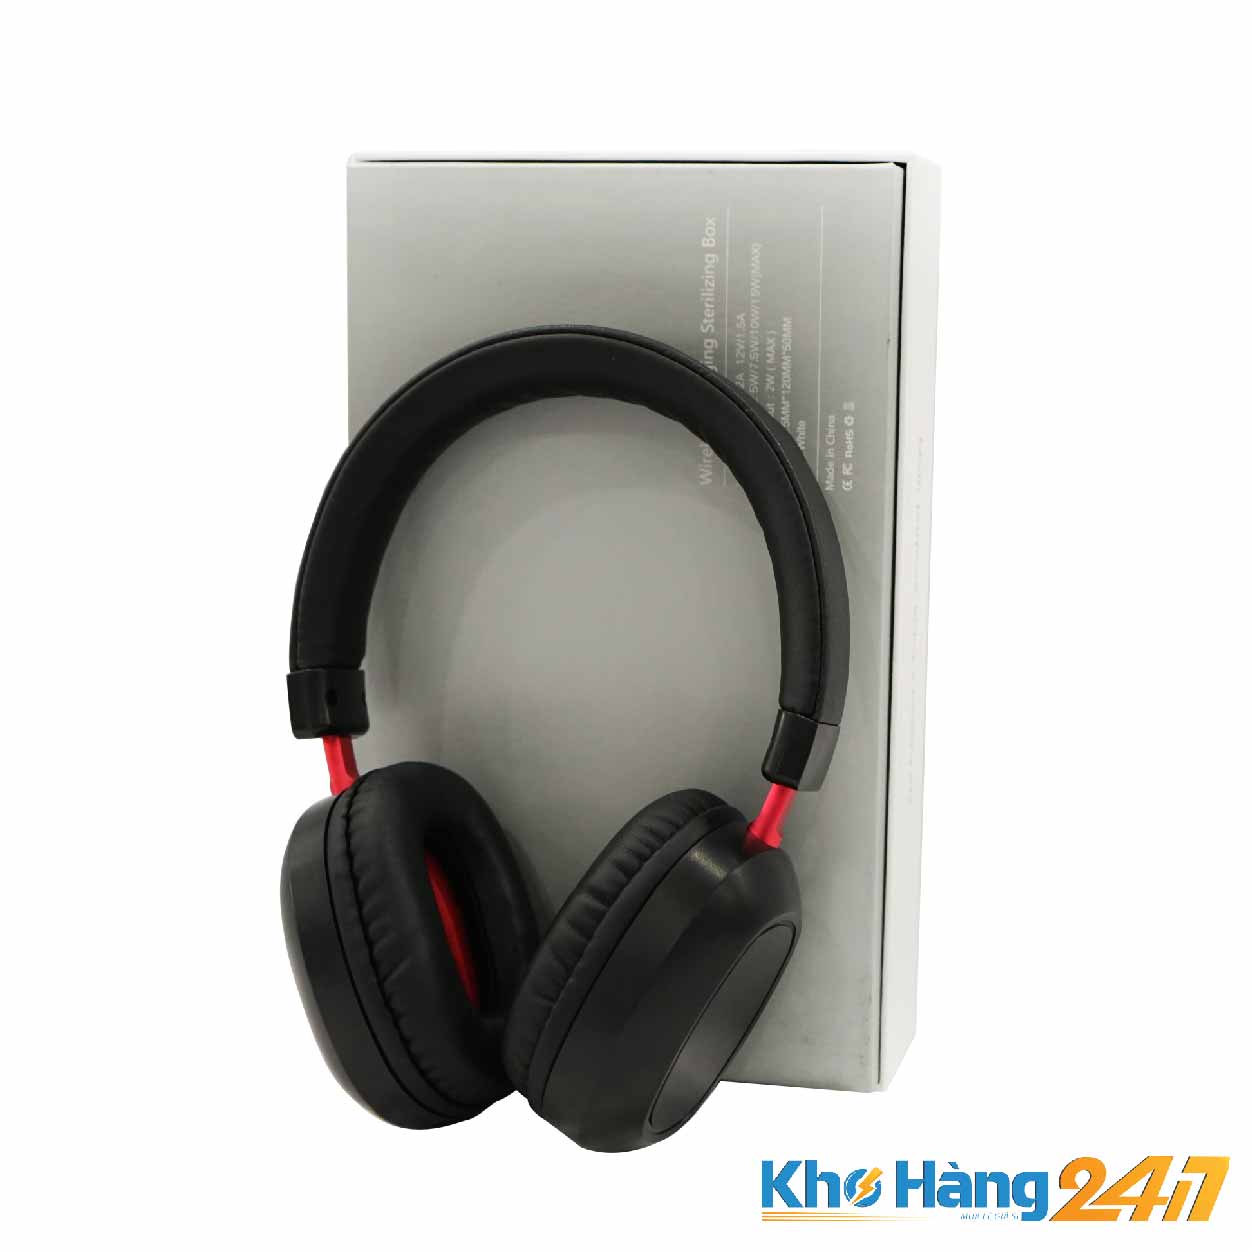 BO QUA TANG 36 - Tai nghe Bluetooth màu đen